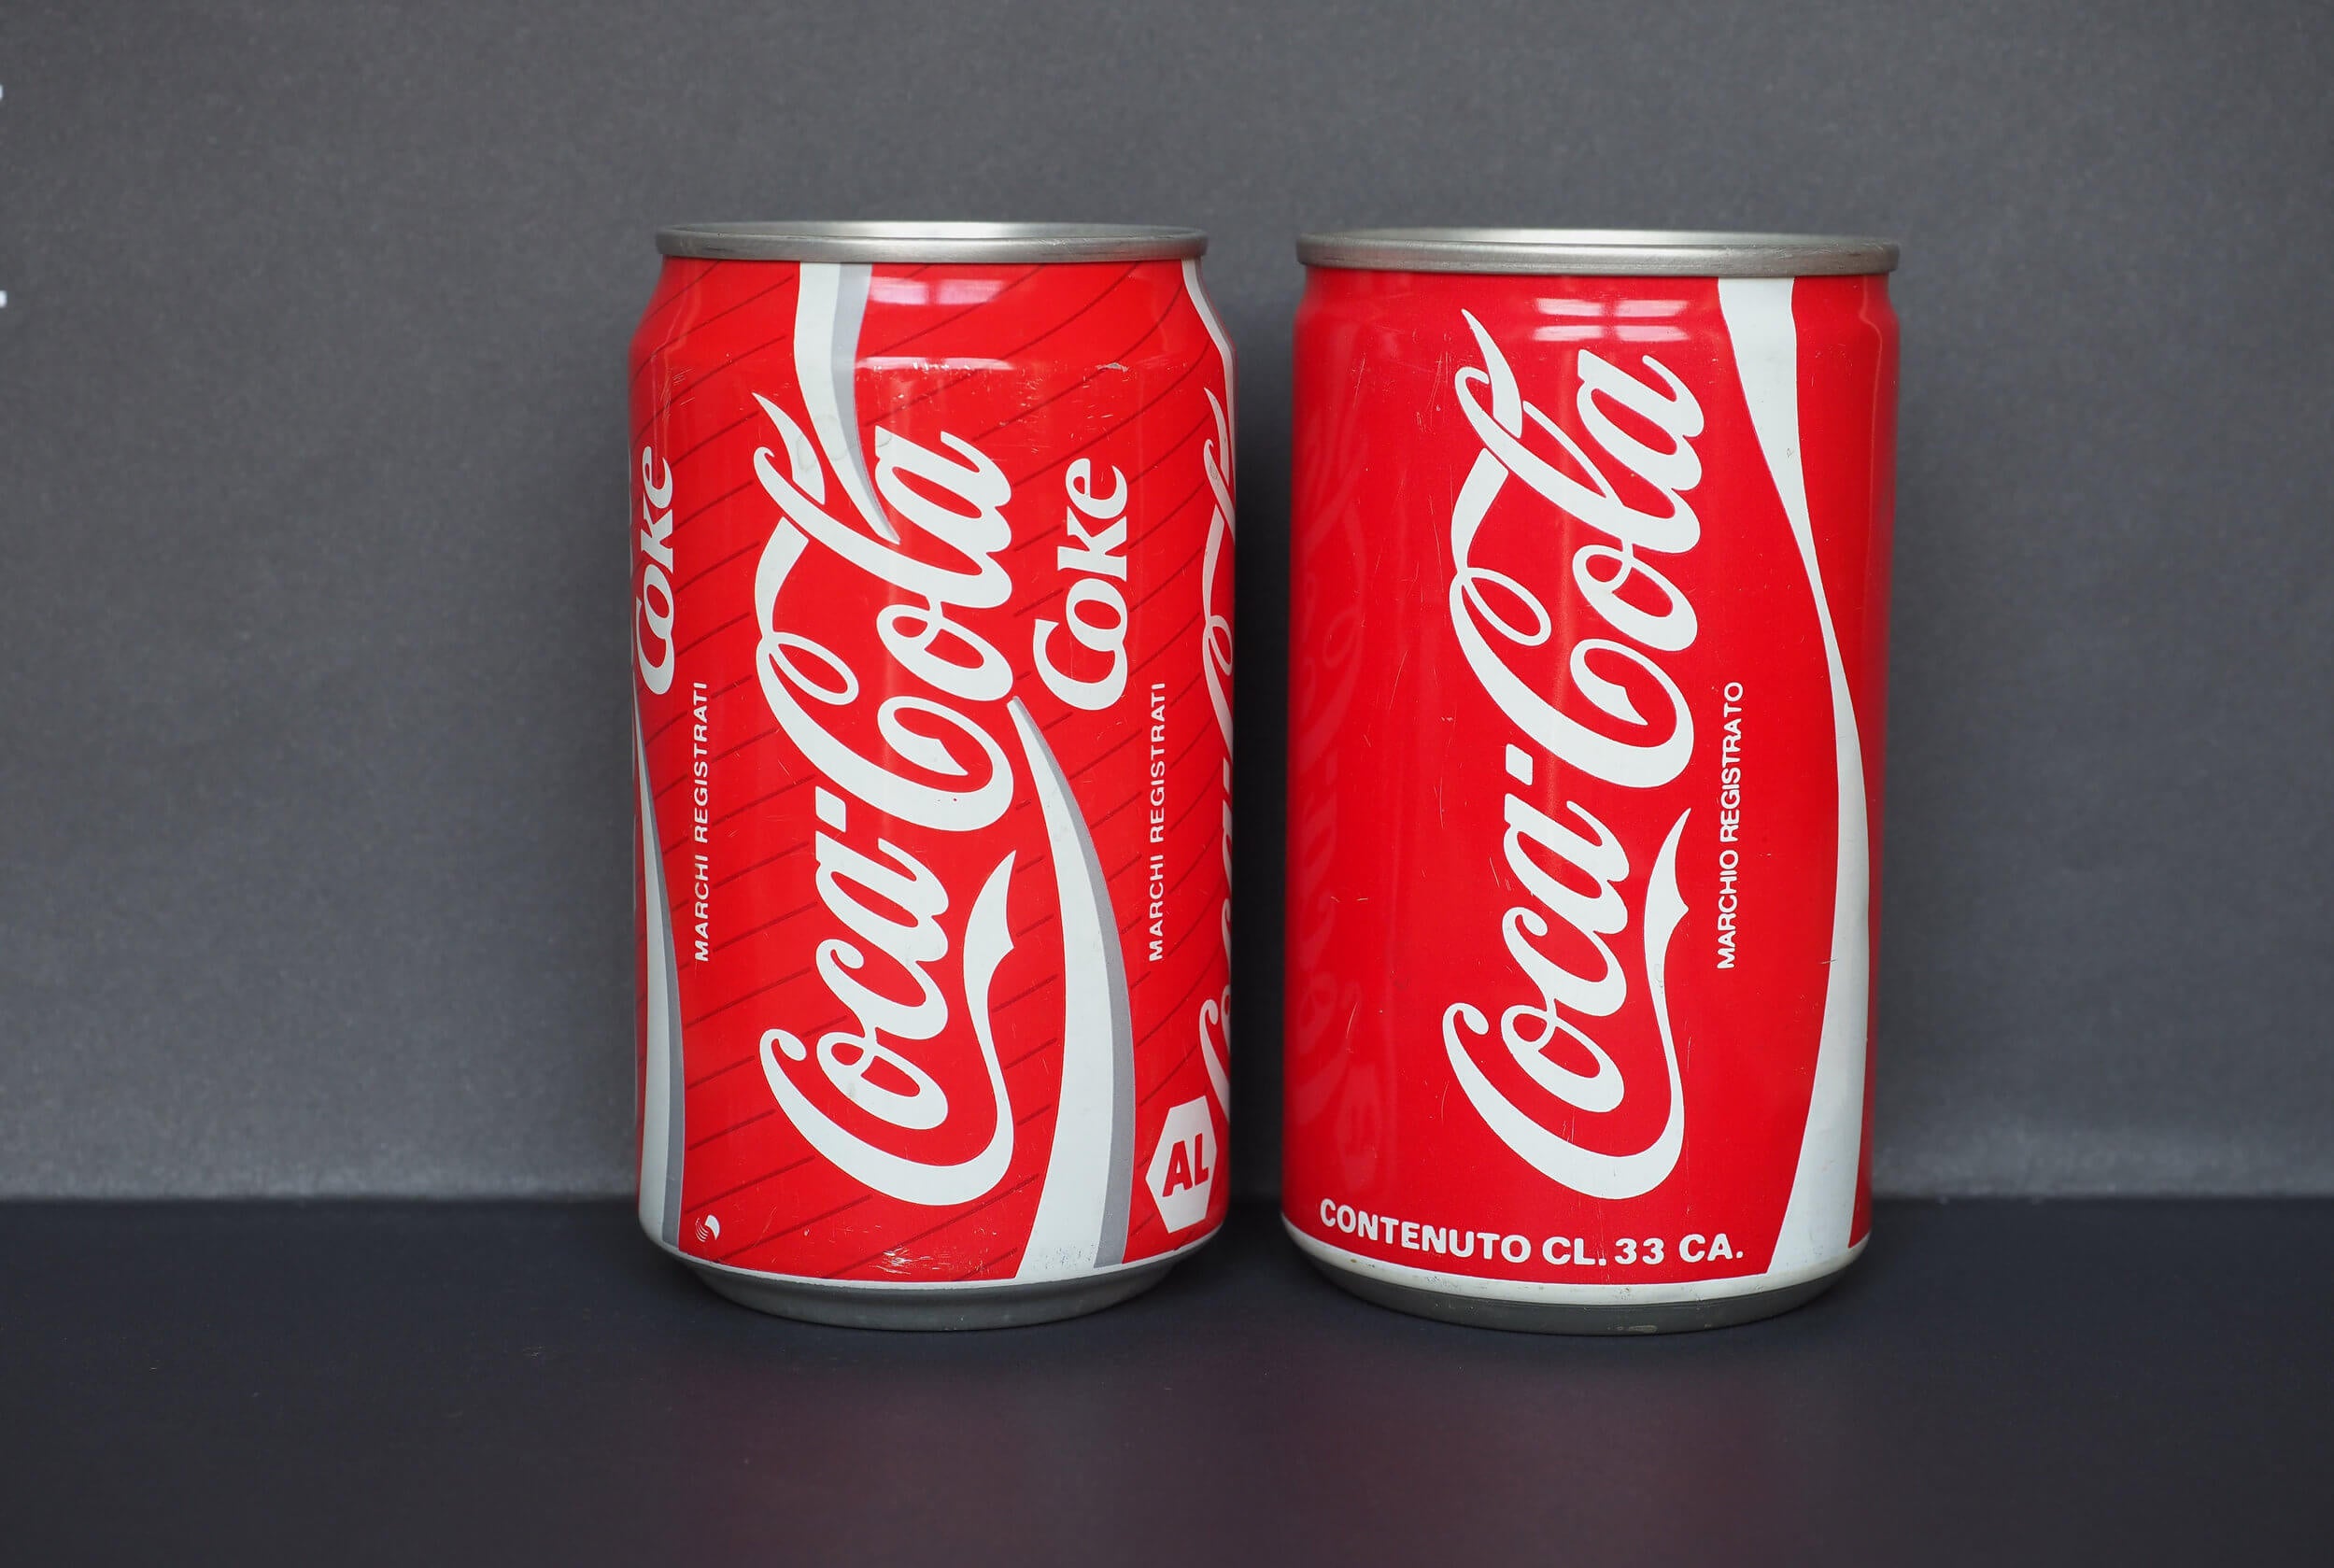 8 usos domésticos de la Coca-Cola que te gustará conocer